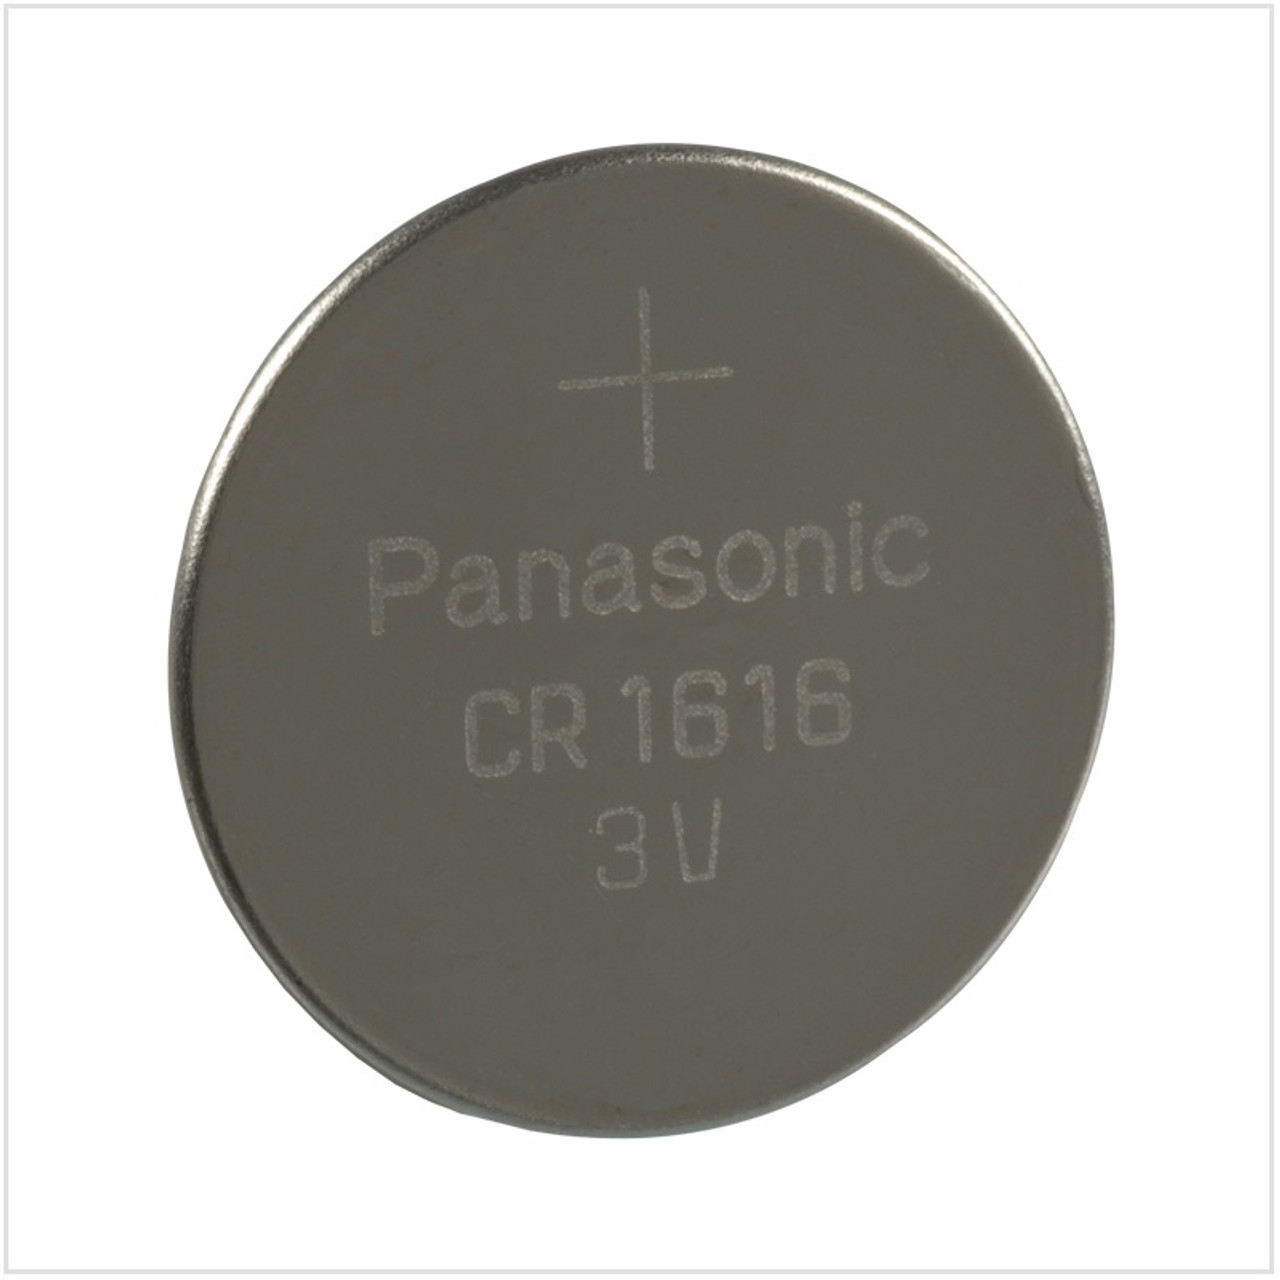 Panasonic CR1616 Battery 3V Lithium Coin Cell Bulk